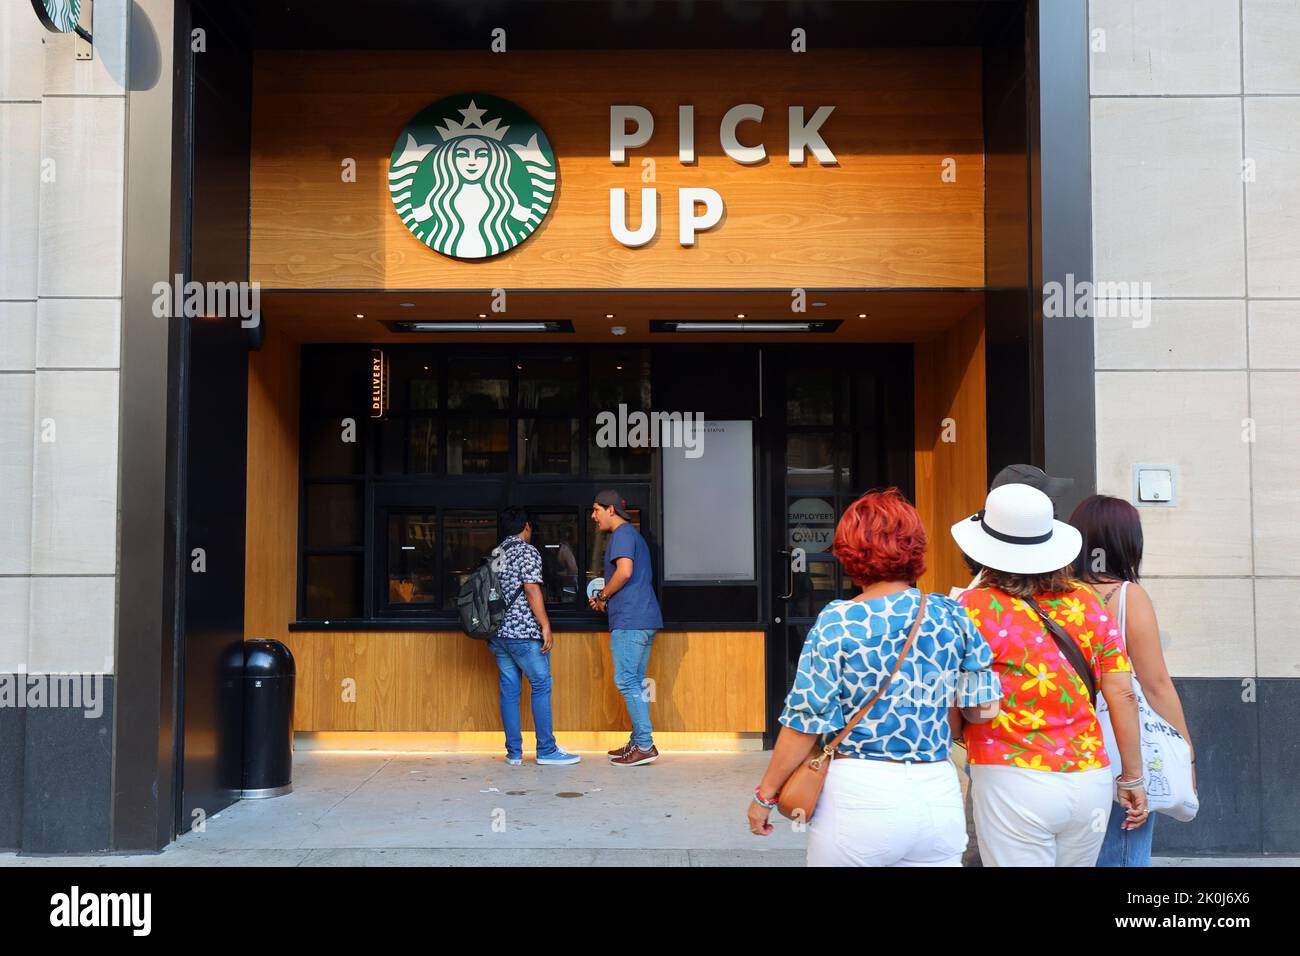 Starbucks Pick Up, 485 5. Ave, New York, NYC Foto des Coffee-Shop-Standorts, optimiert für mobile Bestellungen unterwegs. Stockfoto